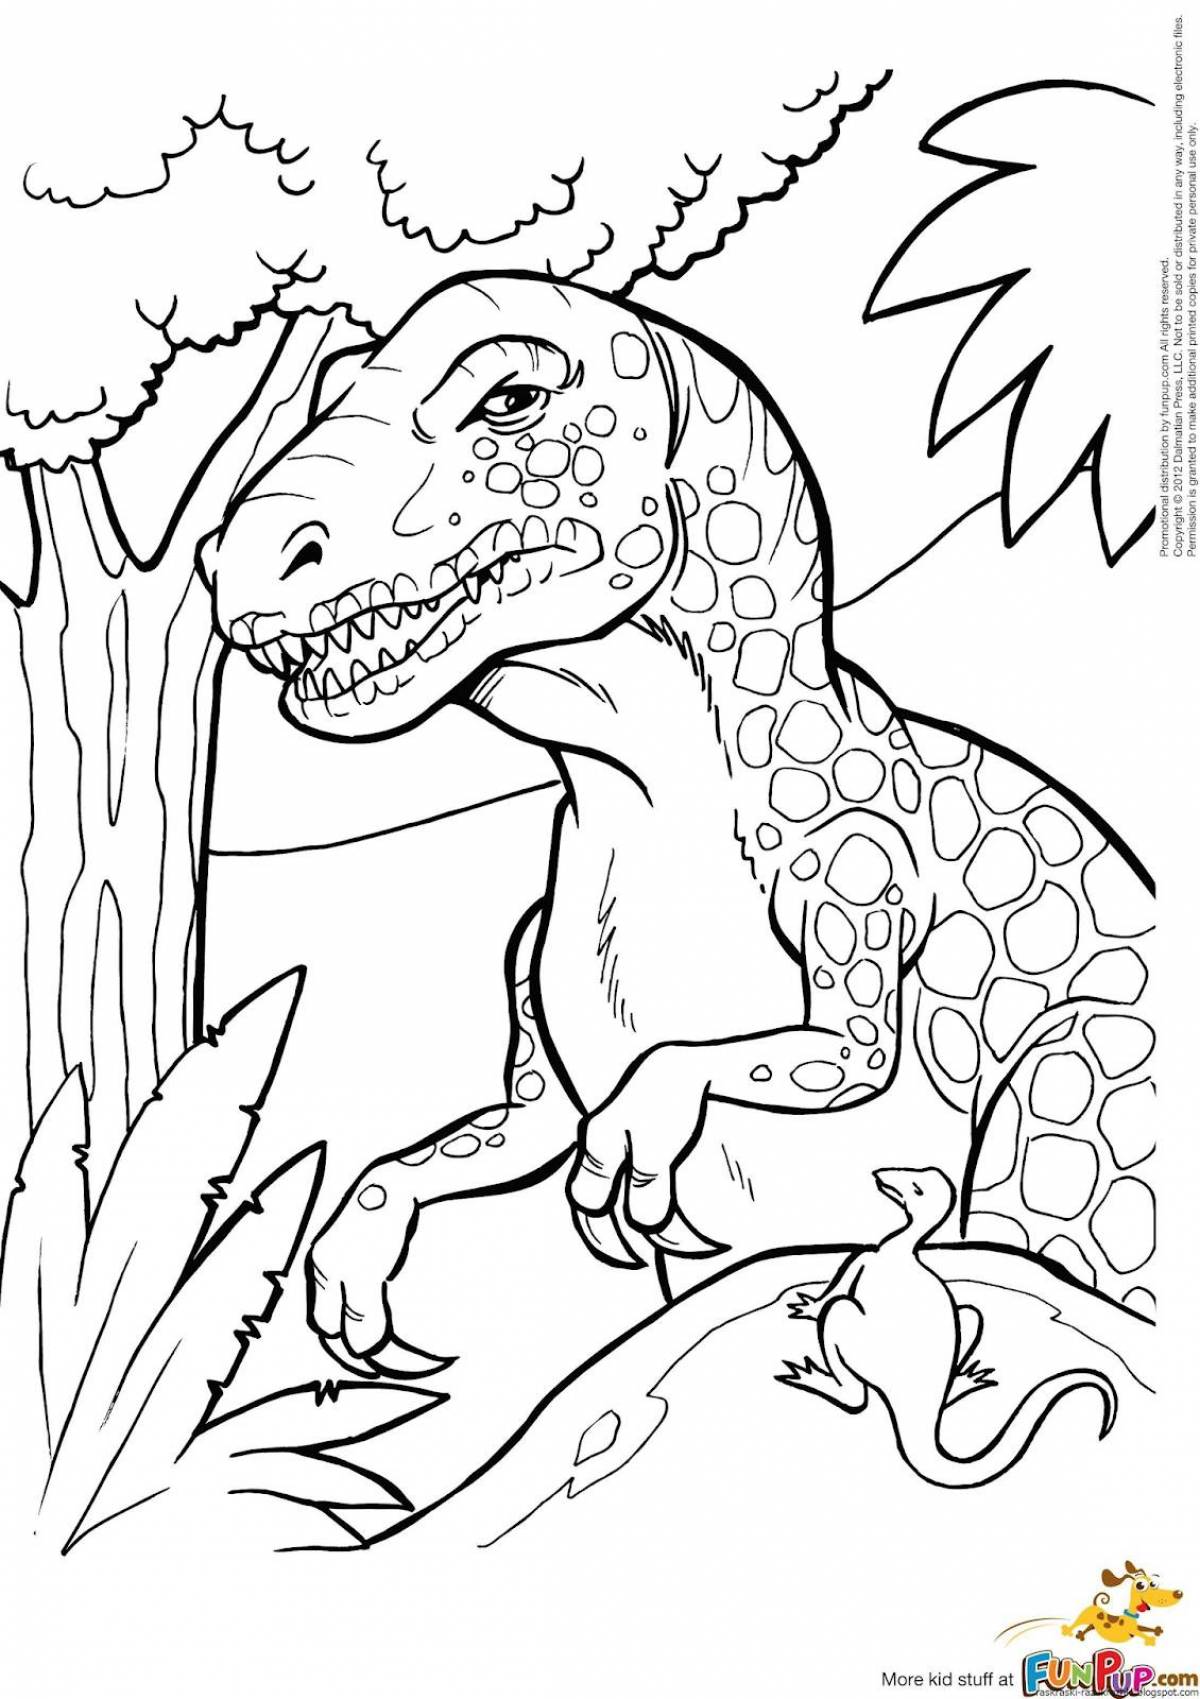 Креативные динозавры раскраски для детей 5-6 лет